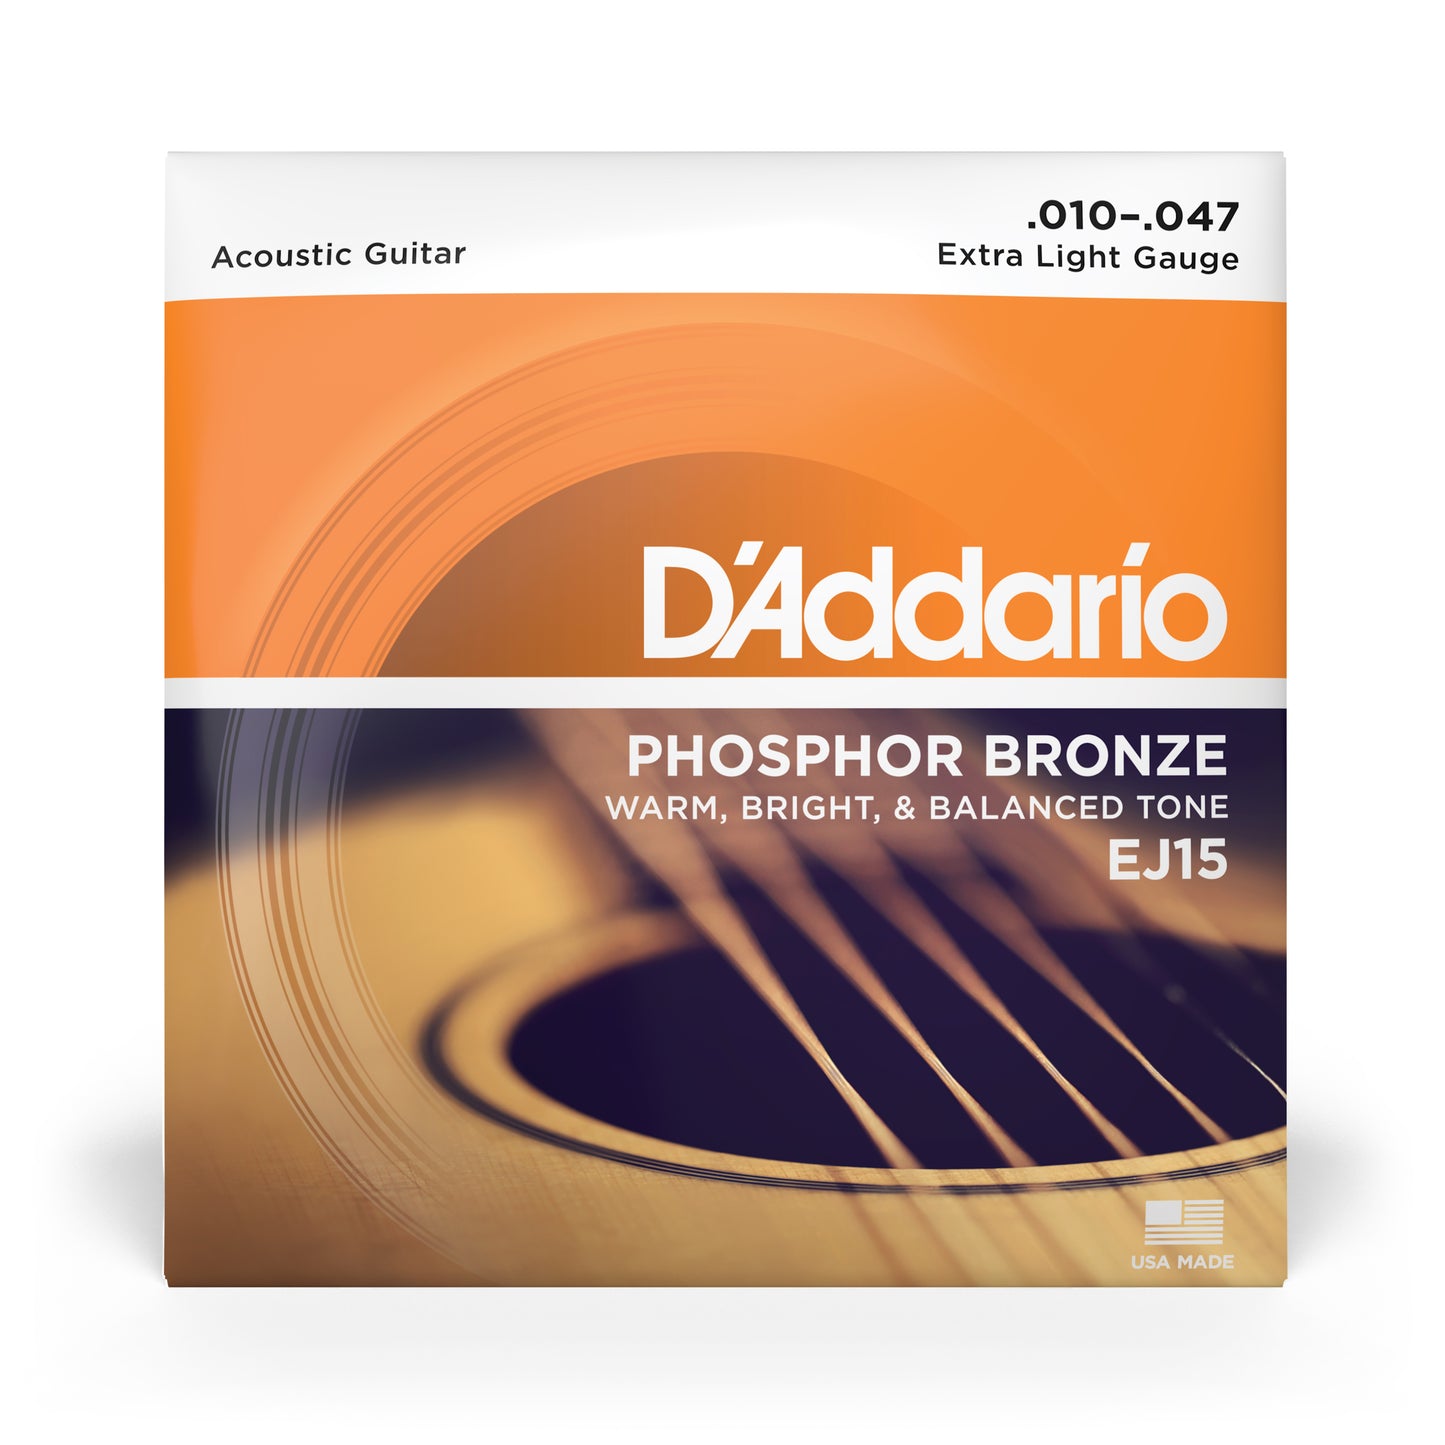 Phosphor Bronze Acoustic Guitar Strings